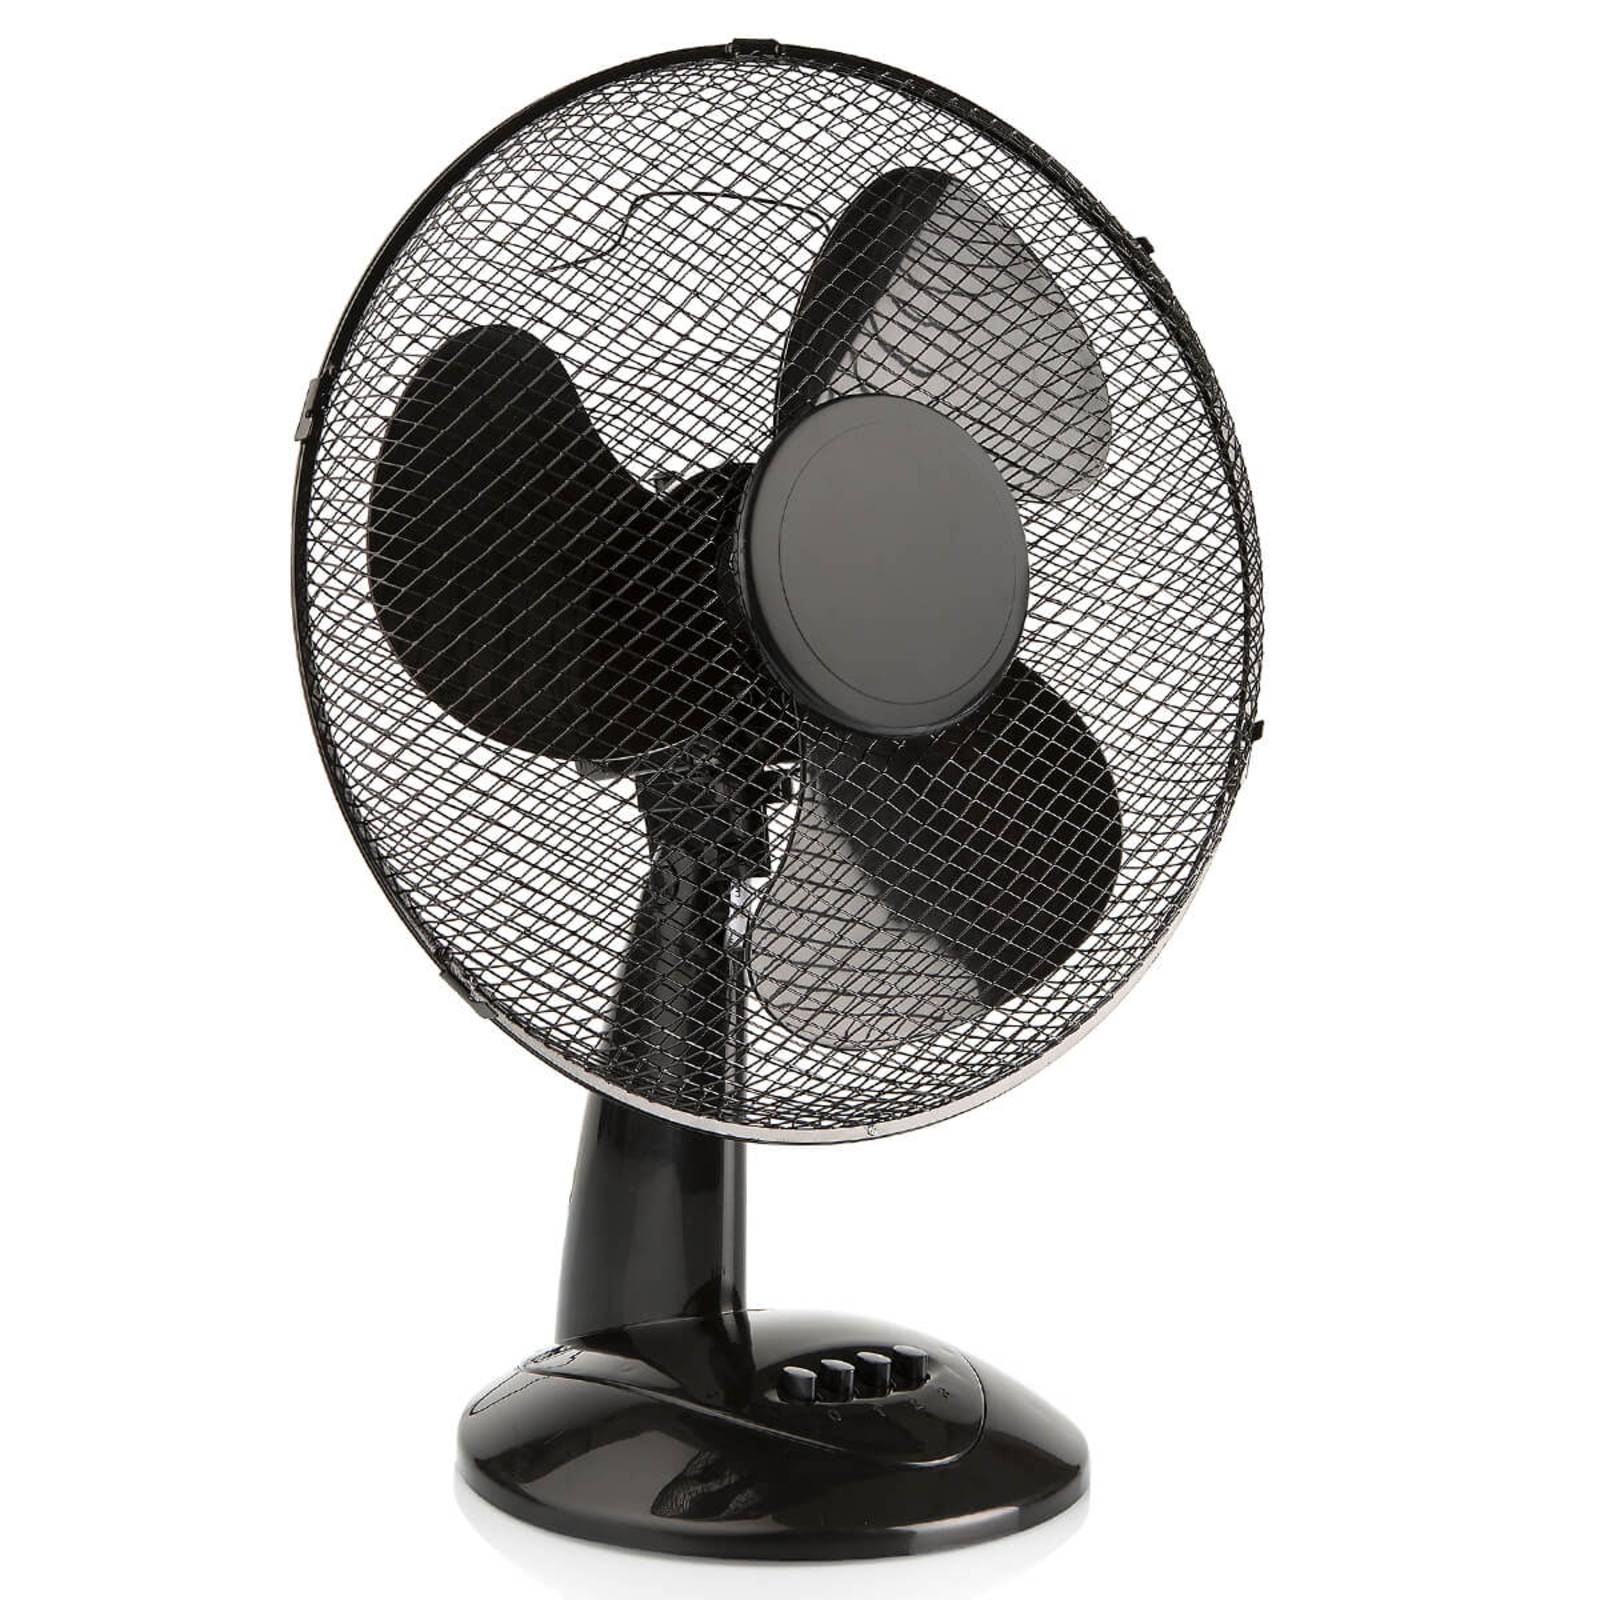 VE5979 - powerful pedestal fan